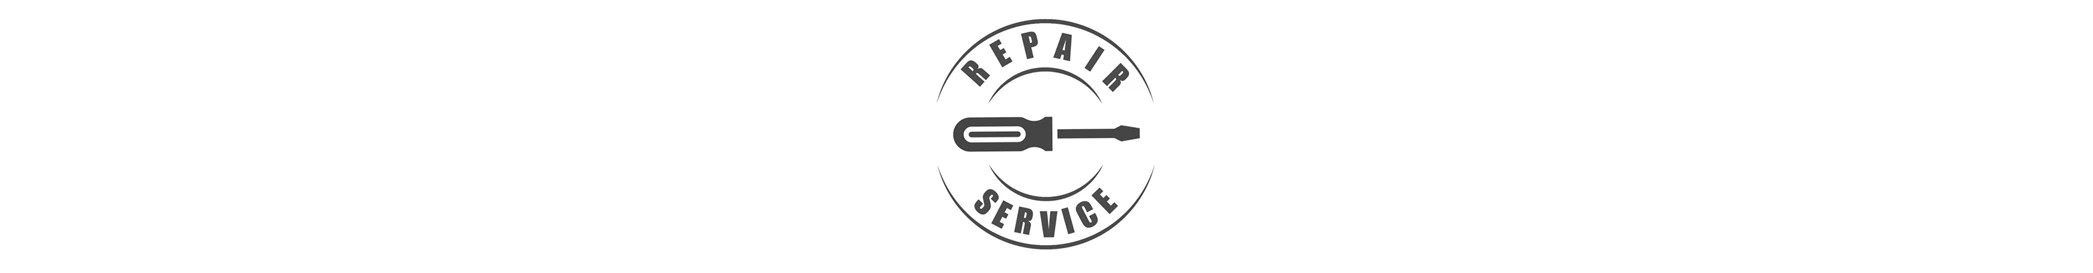 Instrument Repair Service